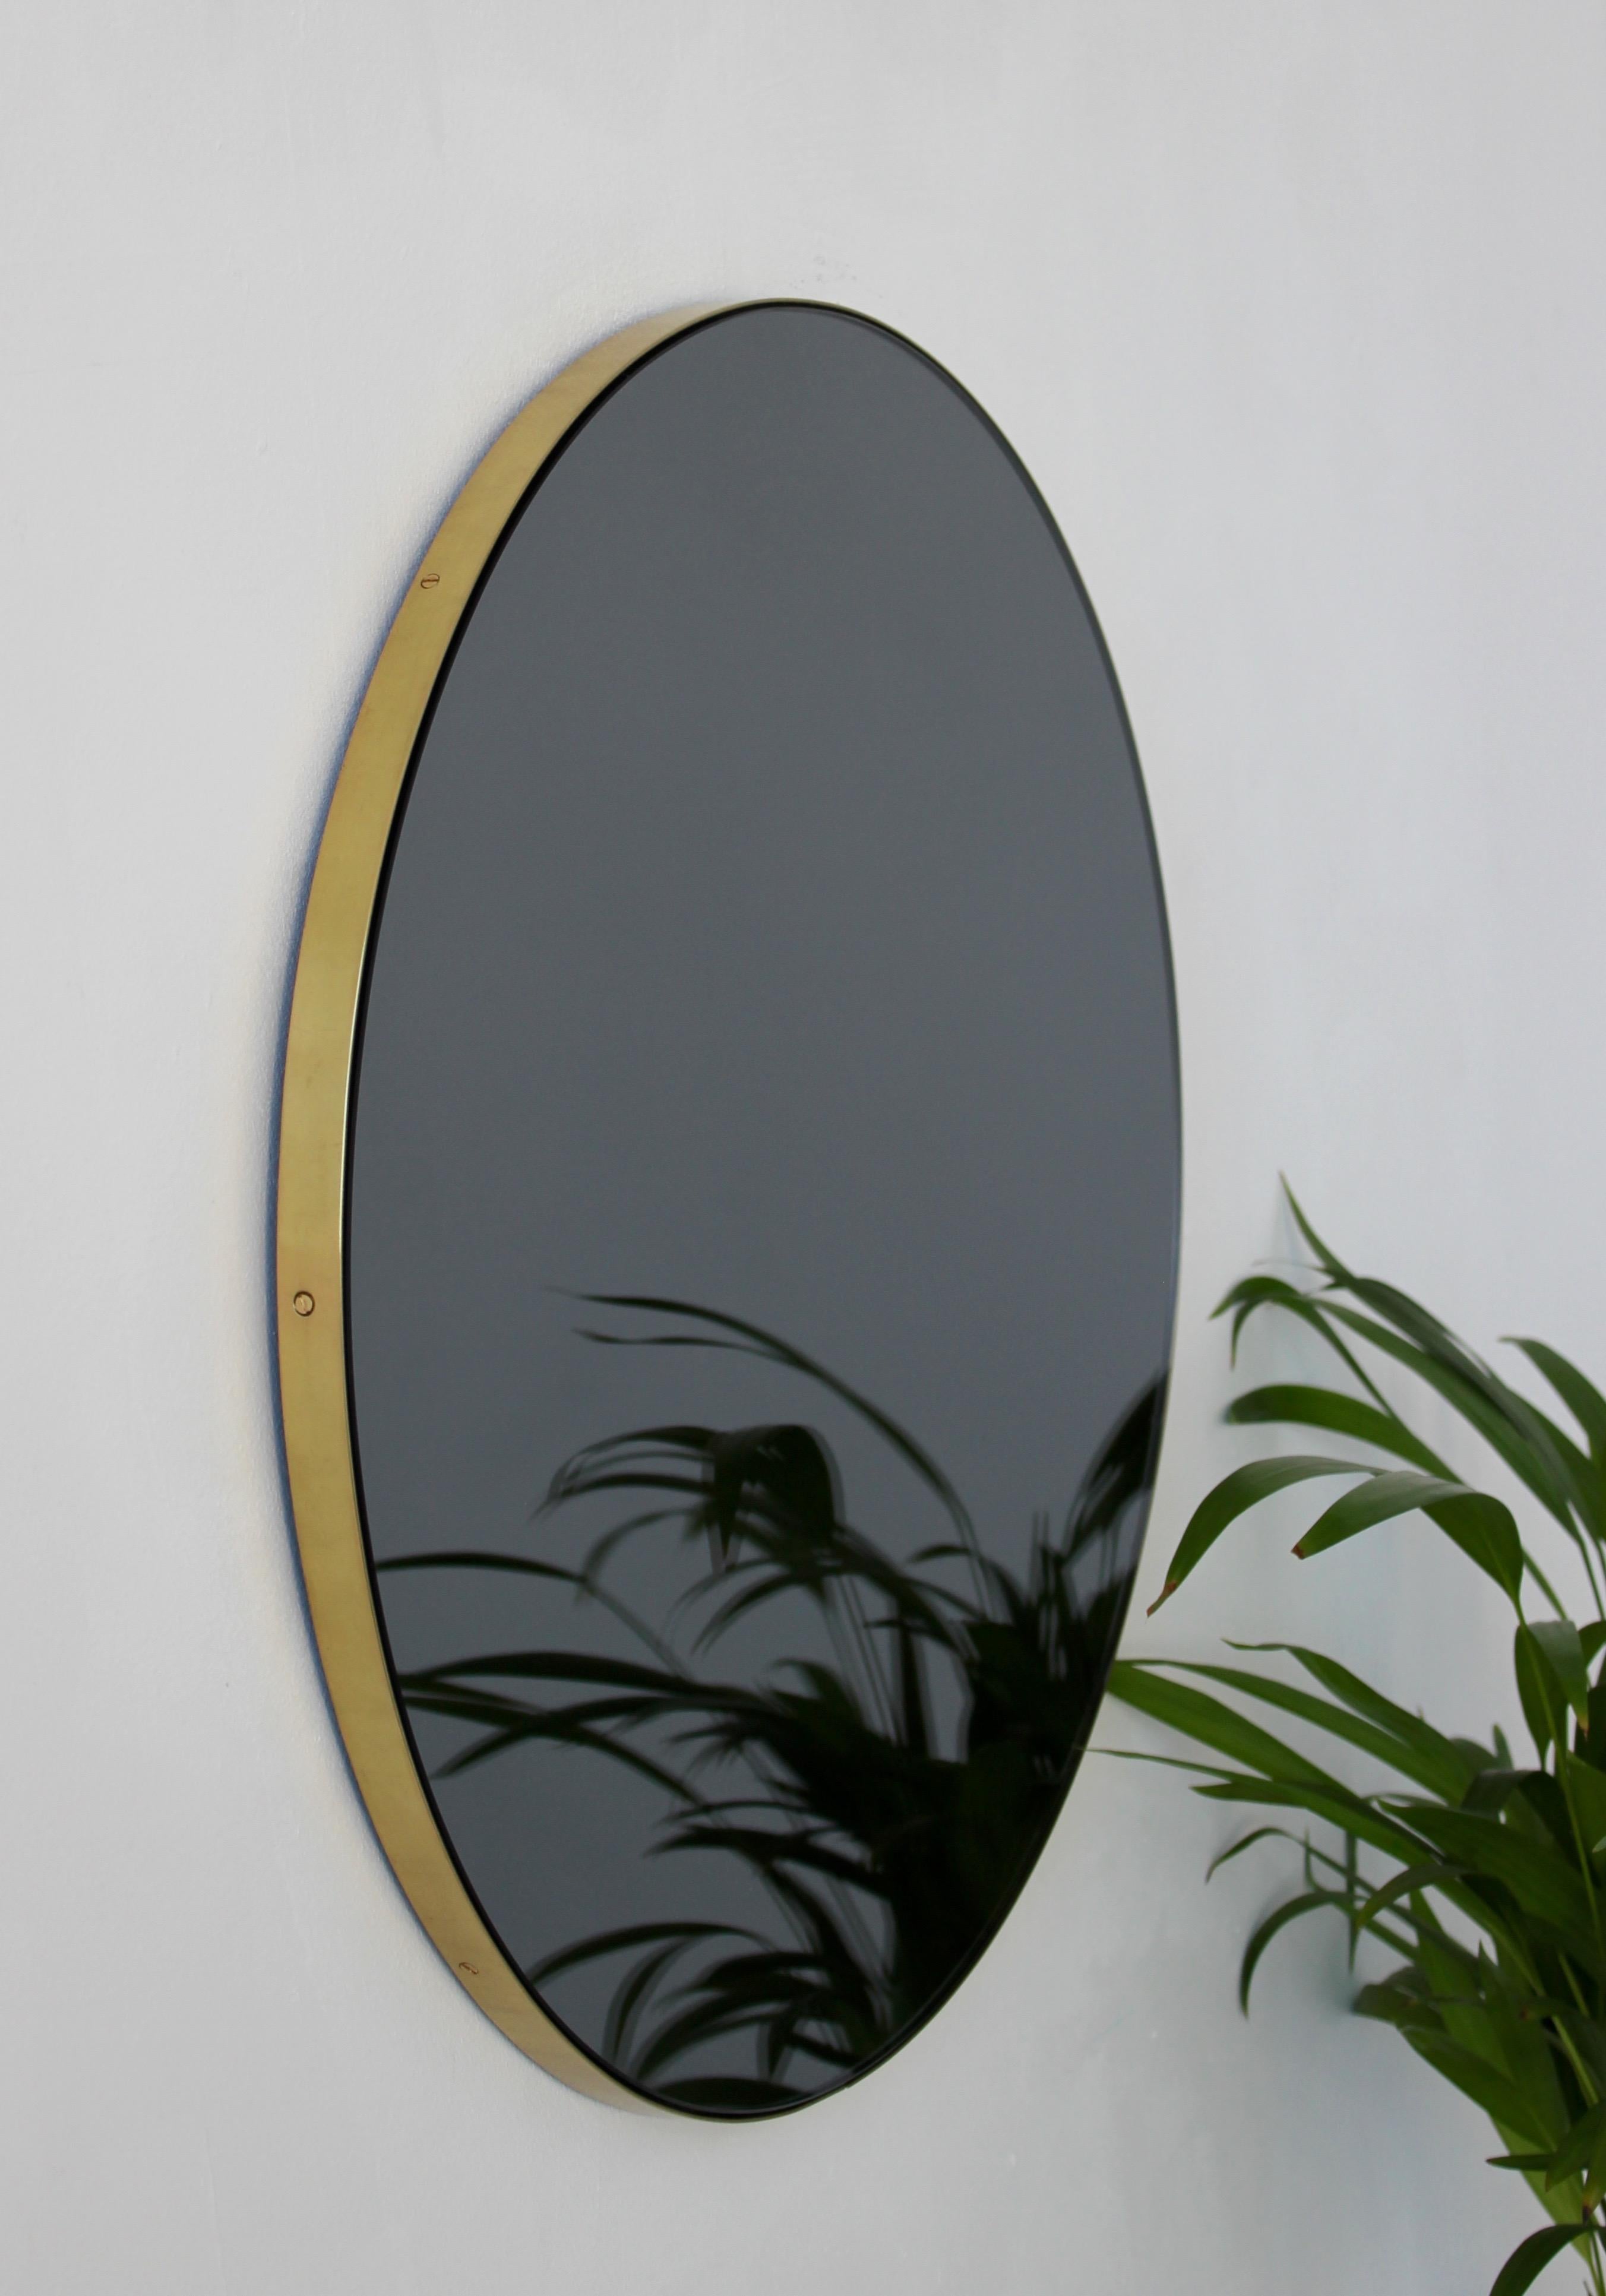 Miroir rond minimaliste teinté noir avec un élégant cadre en laiton brossé. Les détails et la finition, y compris les vis en laiton visibles, soulignent l'aspect artisanal et la qualité du miroir, véritable signature de notre marque. Conçu et